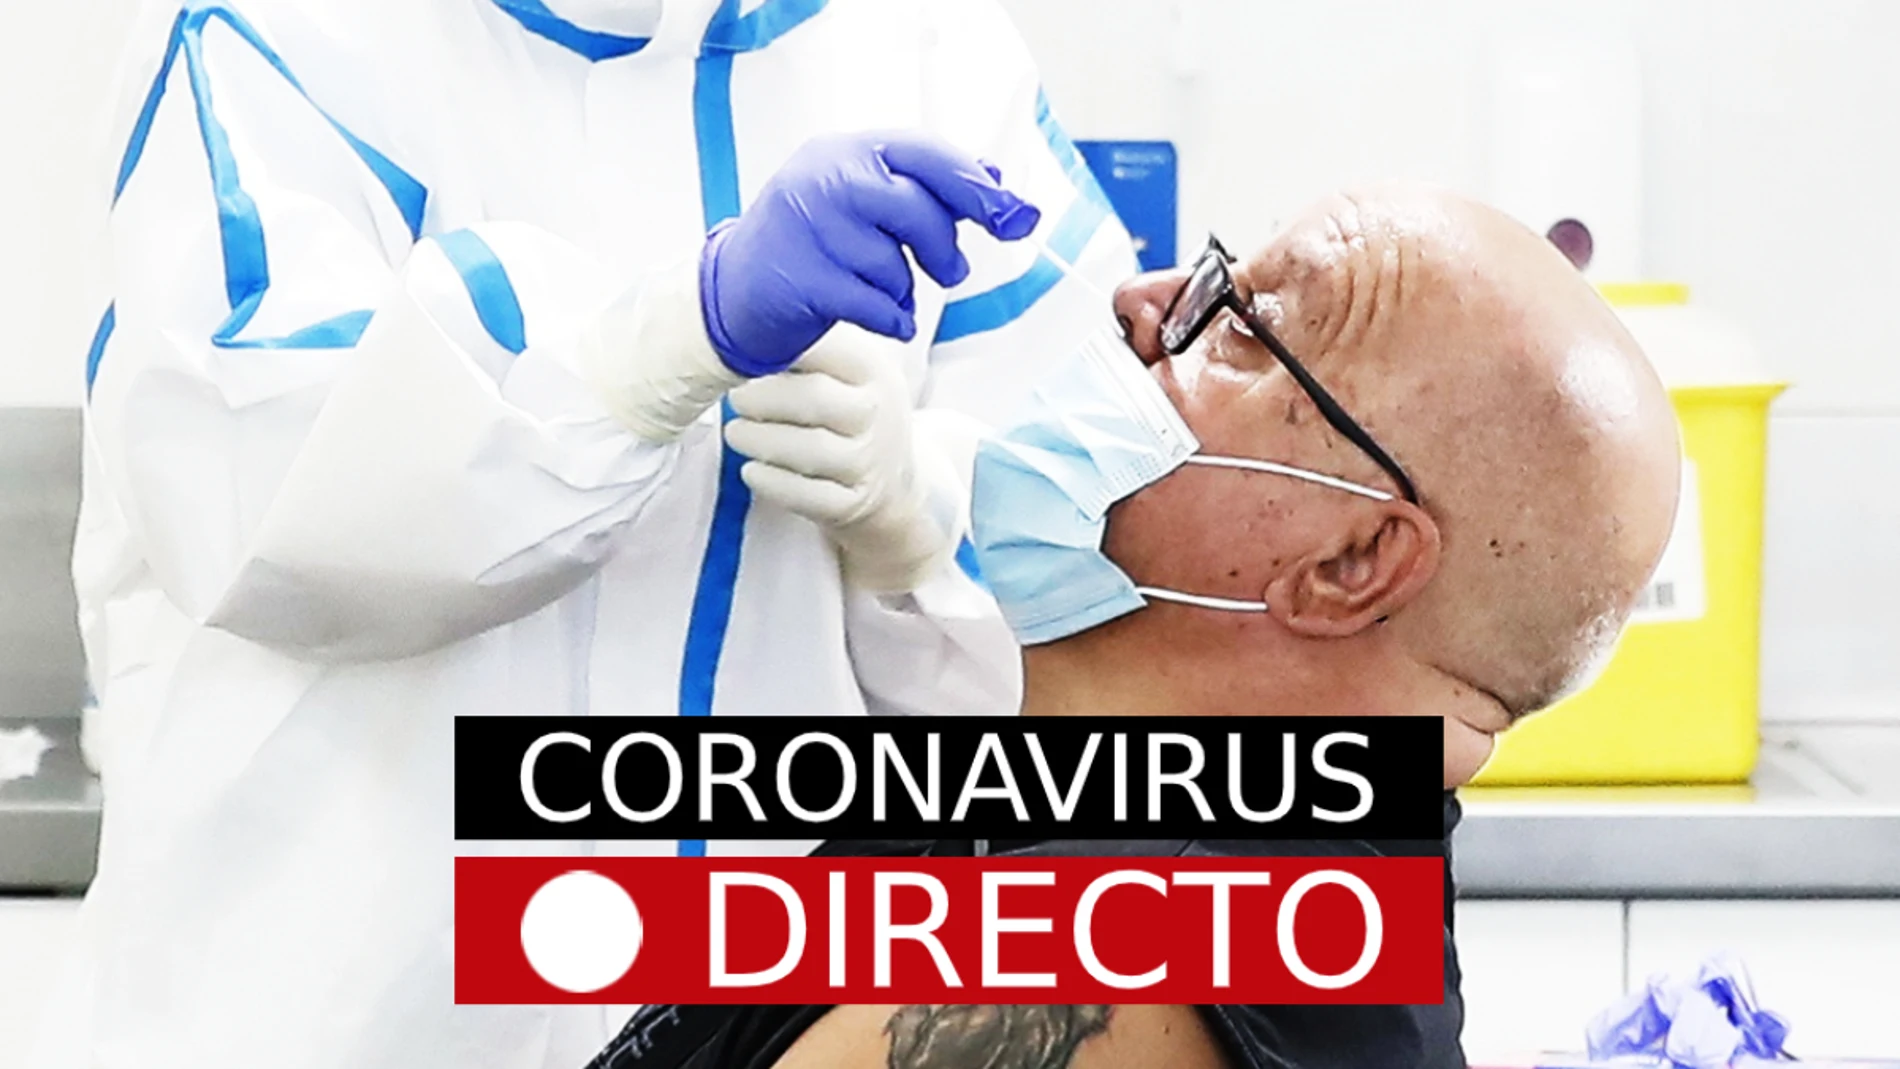 Coronavirus en España hoy: últimas noticias de los contagios, los rebrotes y todos los datos, en directo